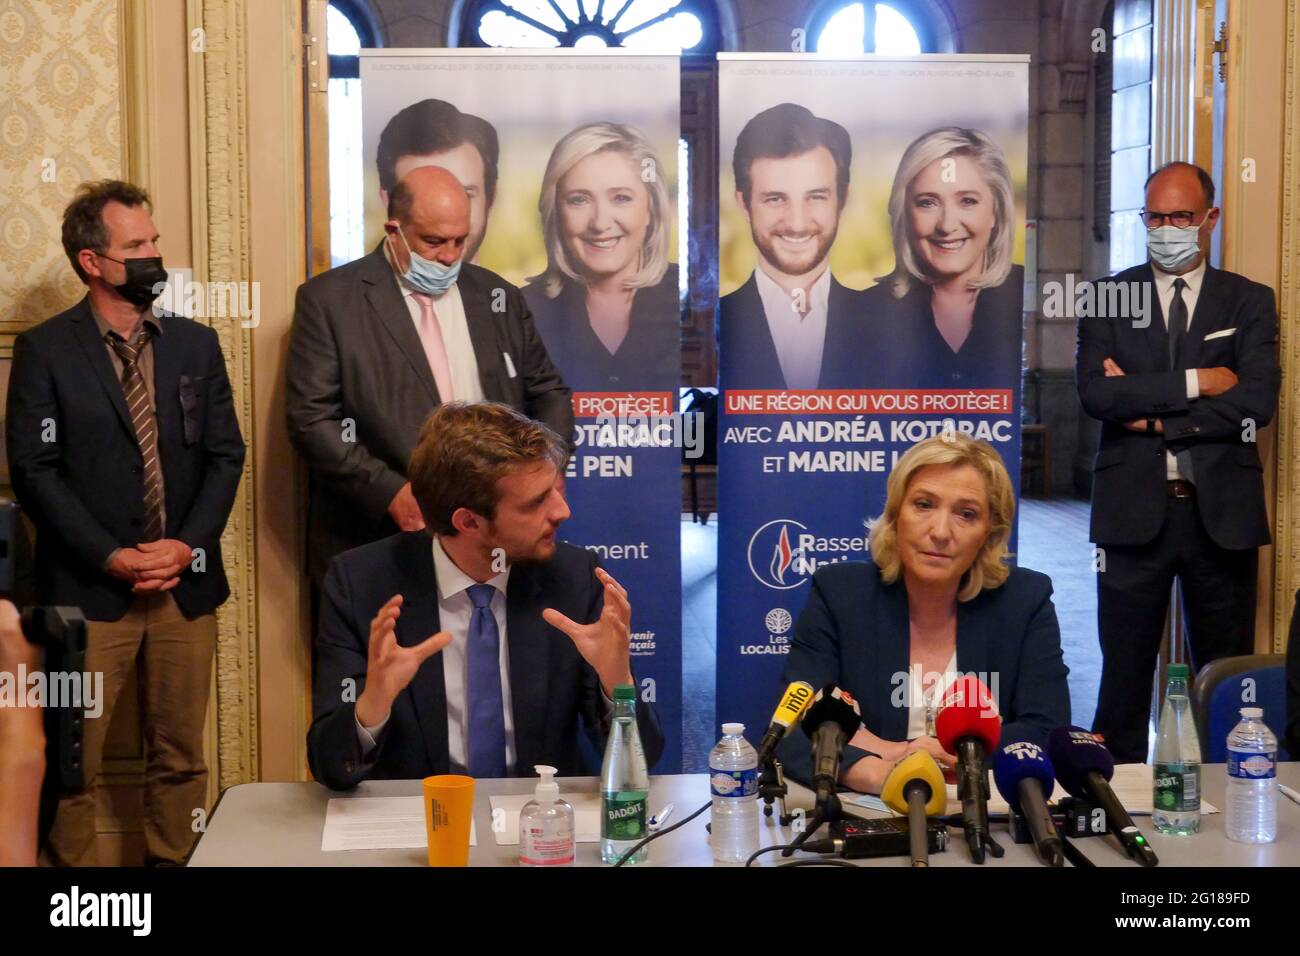 Marine le Pen, Présidente de RN (rassemblement National), et Andrea Kotarac, candidate aux élections régionales en Auvergne région Rhône-Alpes, assistent à une conférence de presse, Saint-Chamond, Loire, RÉGION DE L'AURA, France, juin 3 2021 Banque D'Images